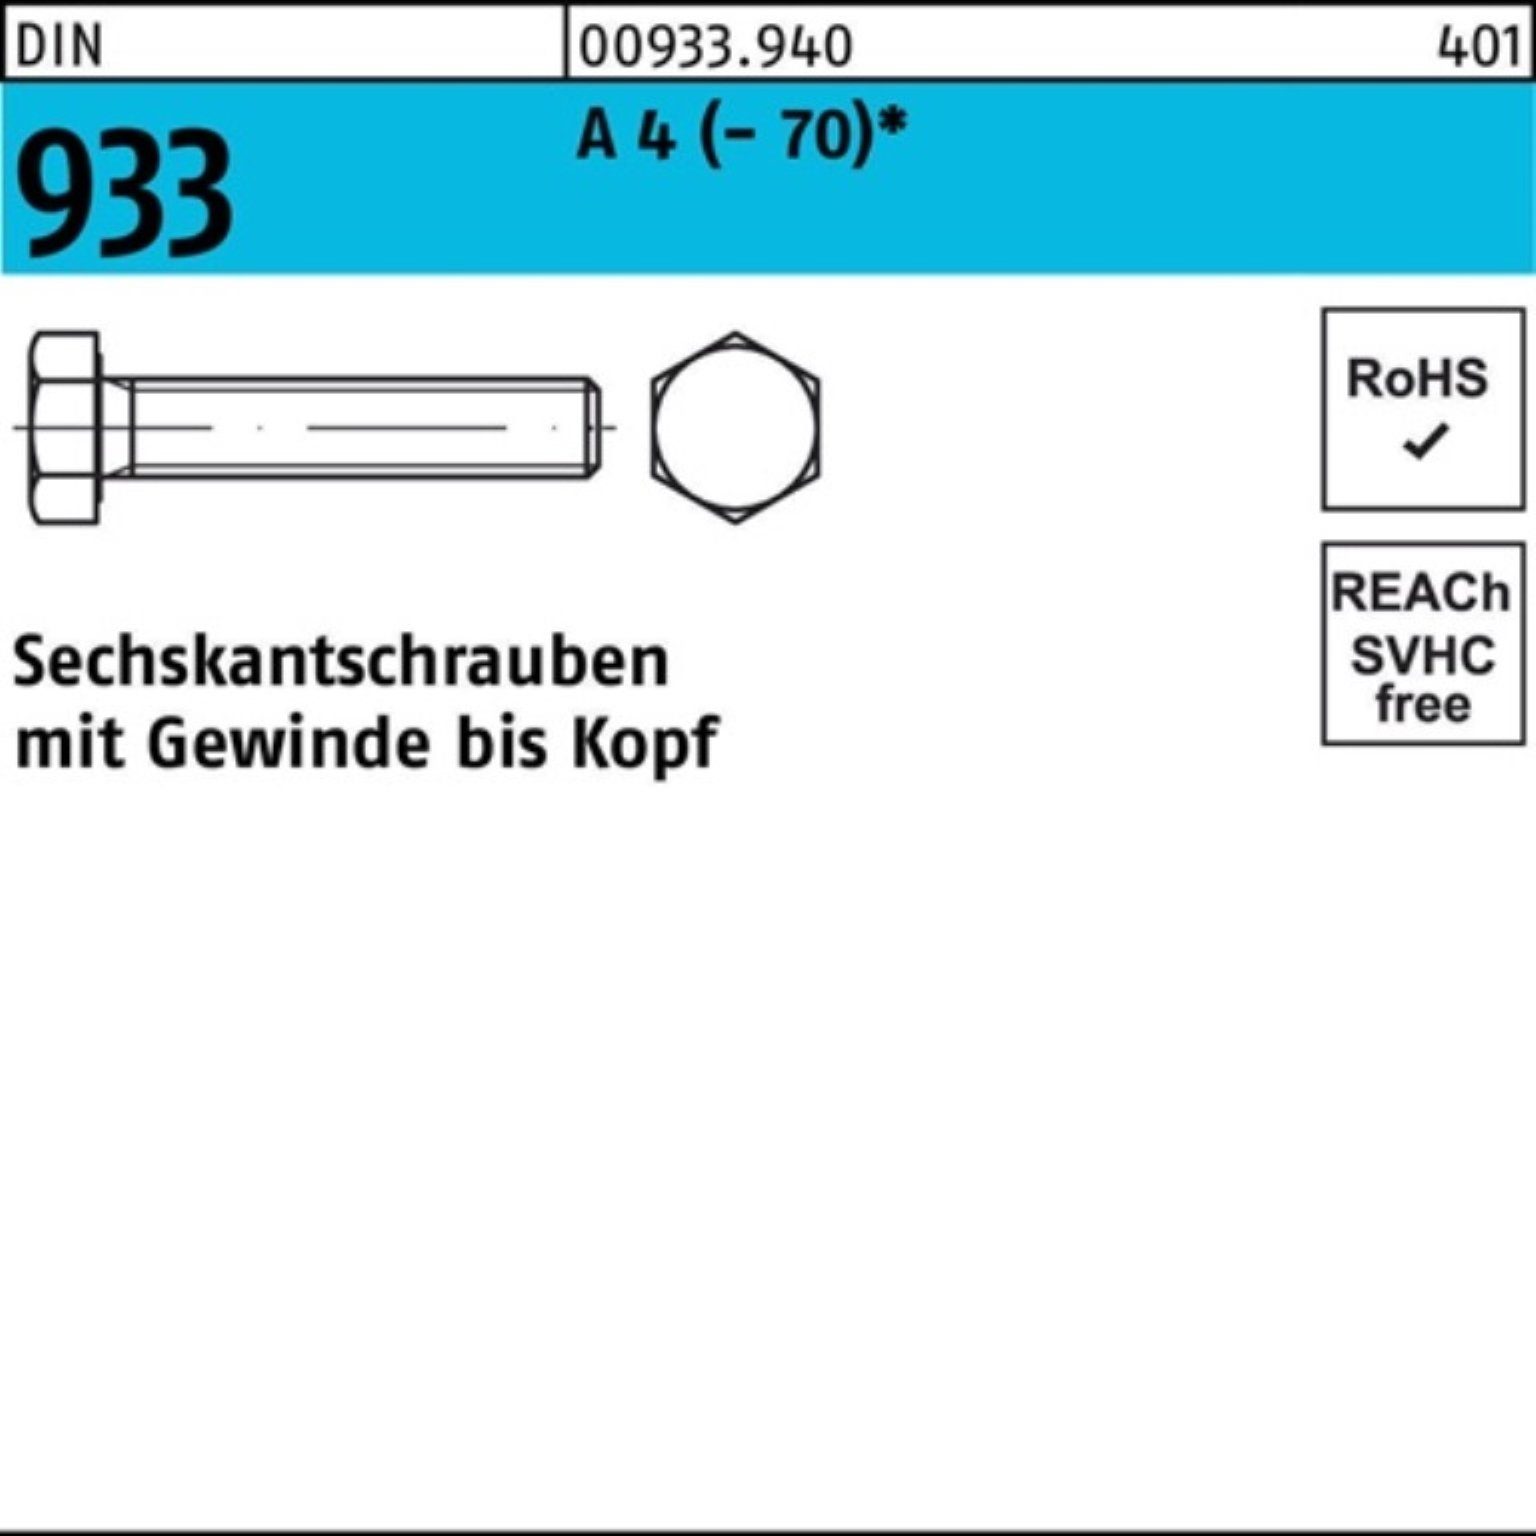 Reyher Sechskantschraube 100er 1 M18x 75 933 Sechskantschraube Stück DIN VG 4 (70) DI A Pack